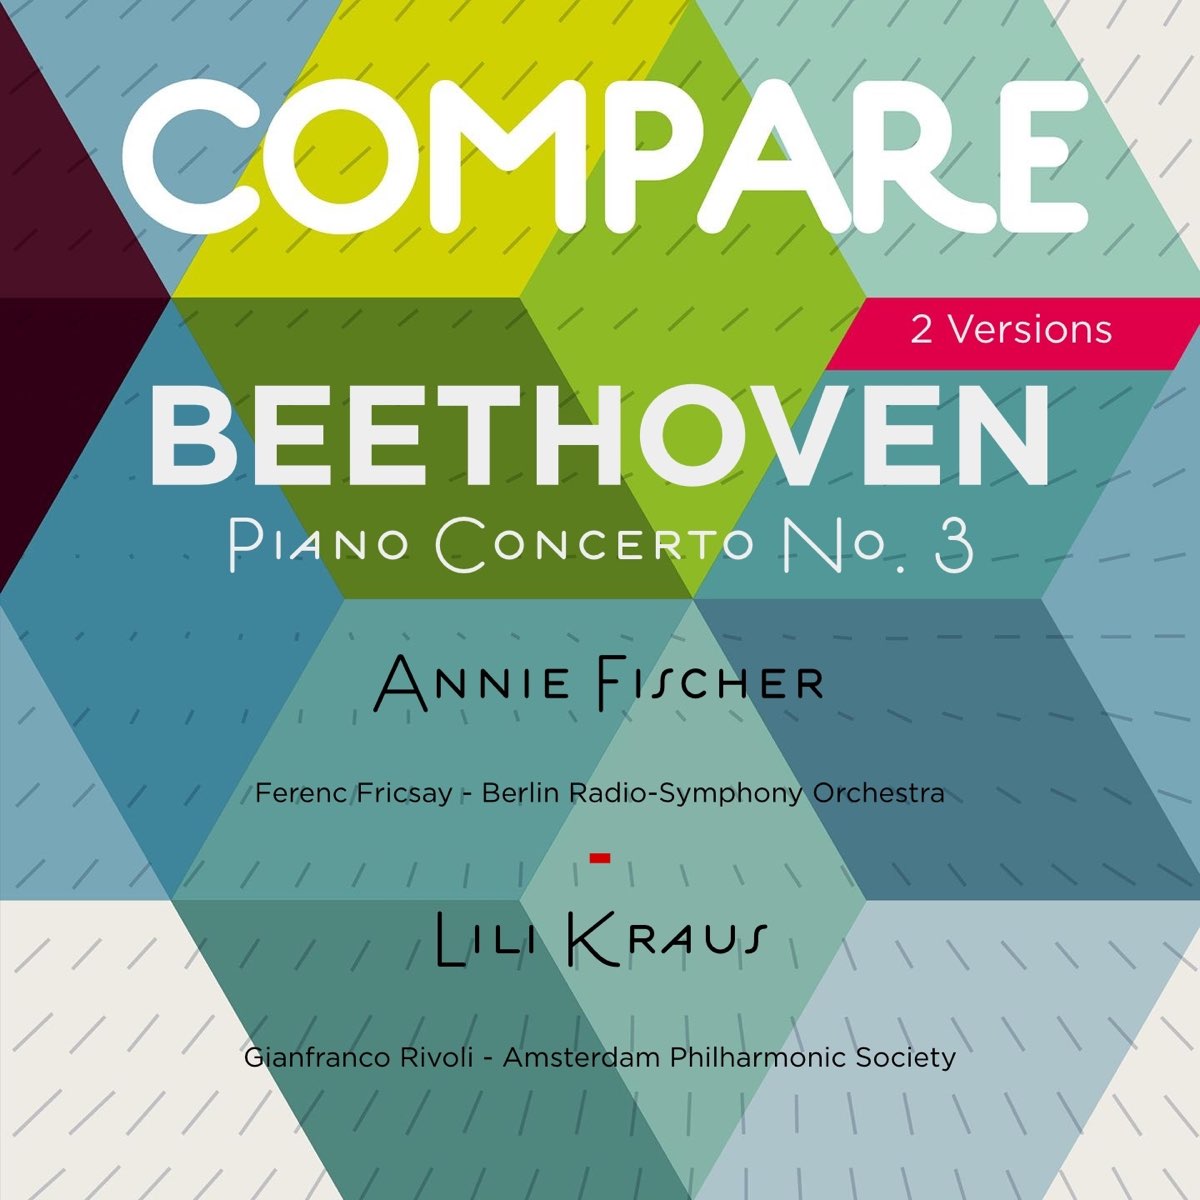 Beethoven: Piano Concerto No. 3, Annie Fischer vs. Lili Kraus (Compare 2  Versions) by Annie Fischer & Lili Kraus on Apple Music